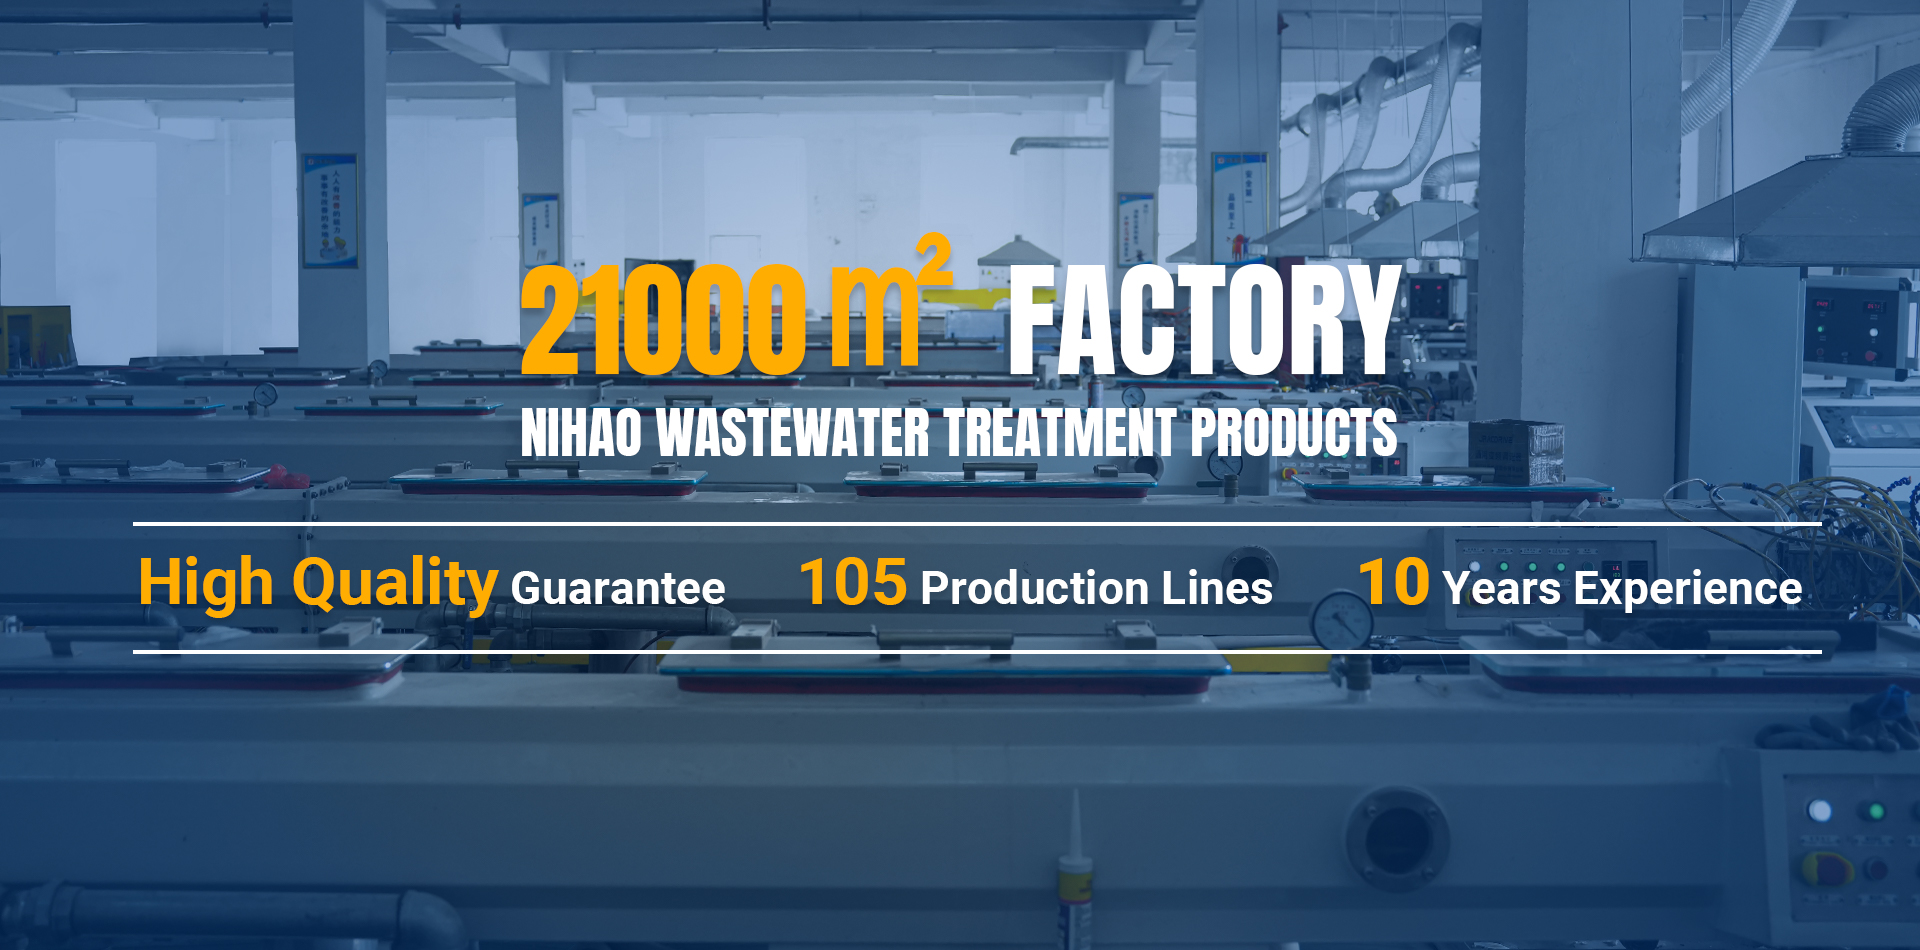 Nihao ผลิตภัณฑ์บำบัดน้ำเสีย